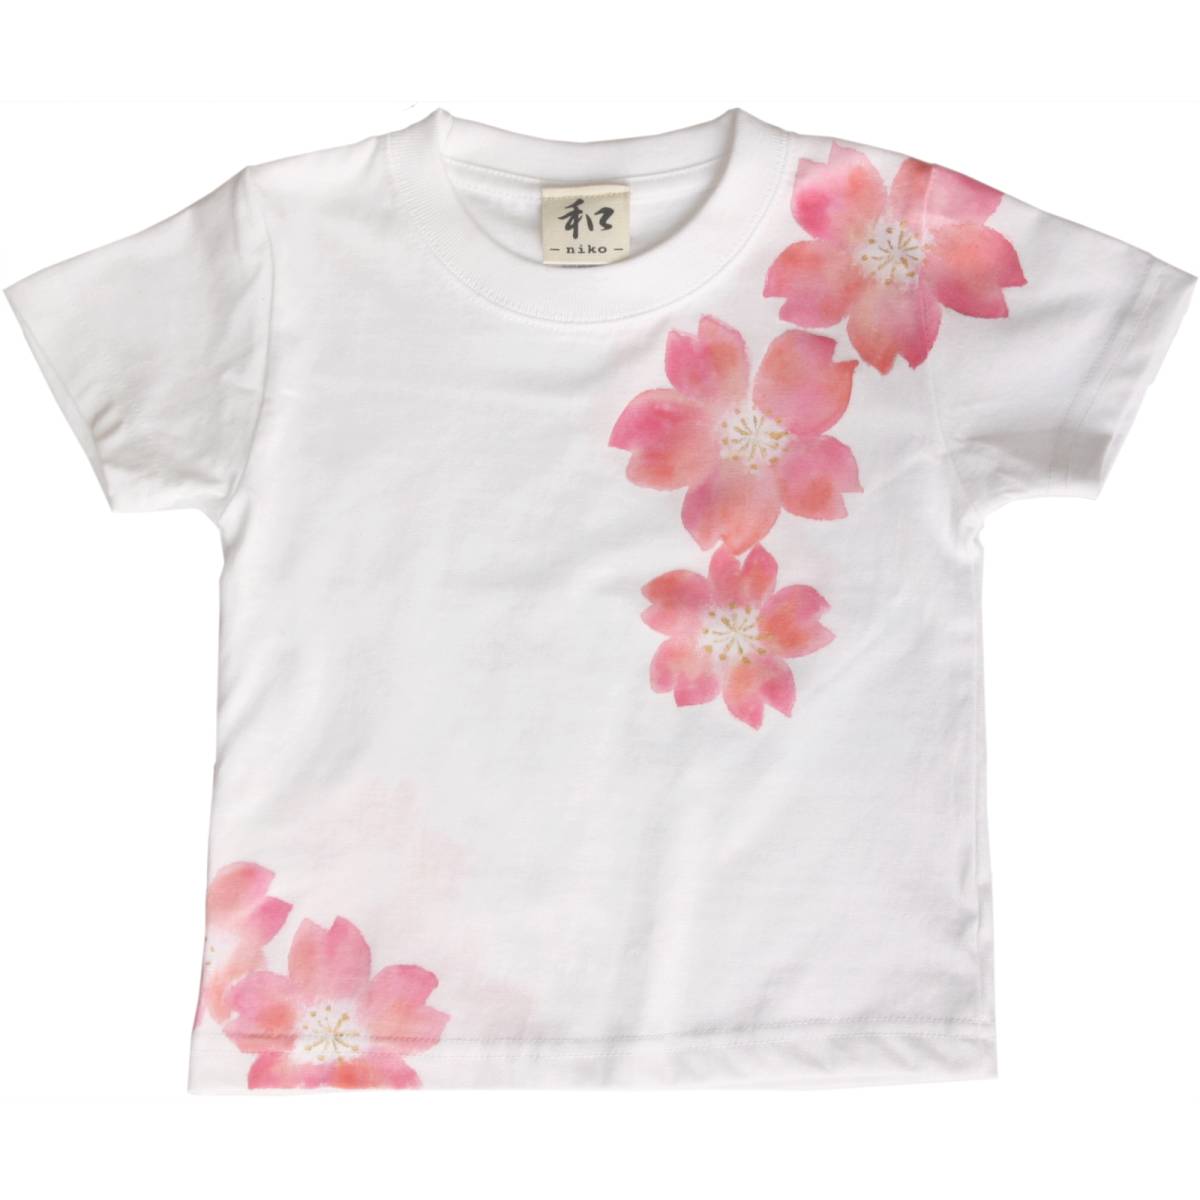 Vêtements pour enfants T-shirt pour enfants Taille 90 Blanc Danse Motif de fleurs de cerisier T-shirt fait à la main T-shirt peint à la main Motif japonais Printemps Blanc, manche courte, pour les filles, 90(85~94cm)